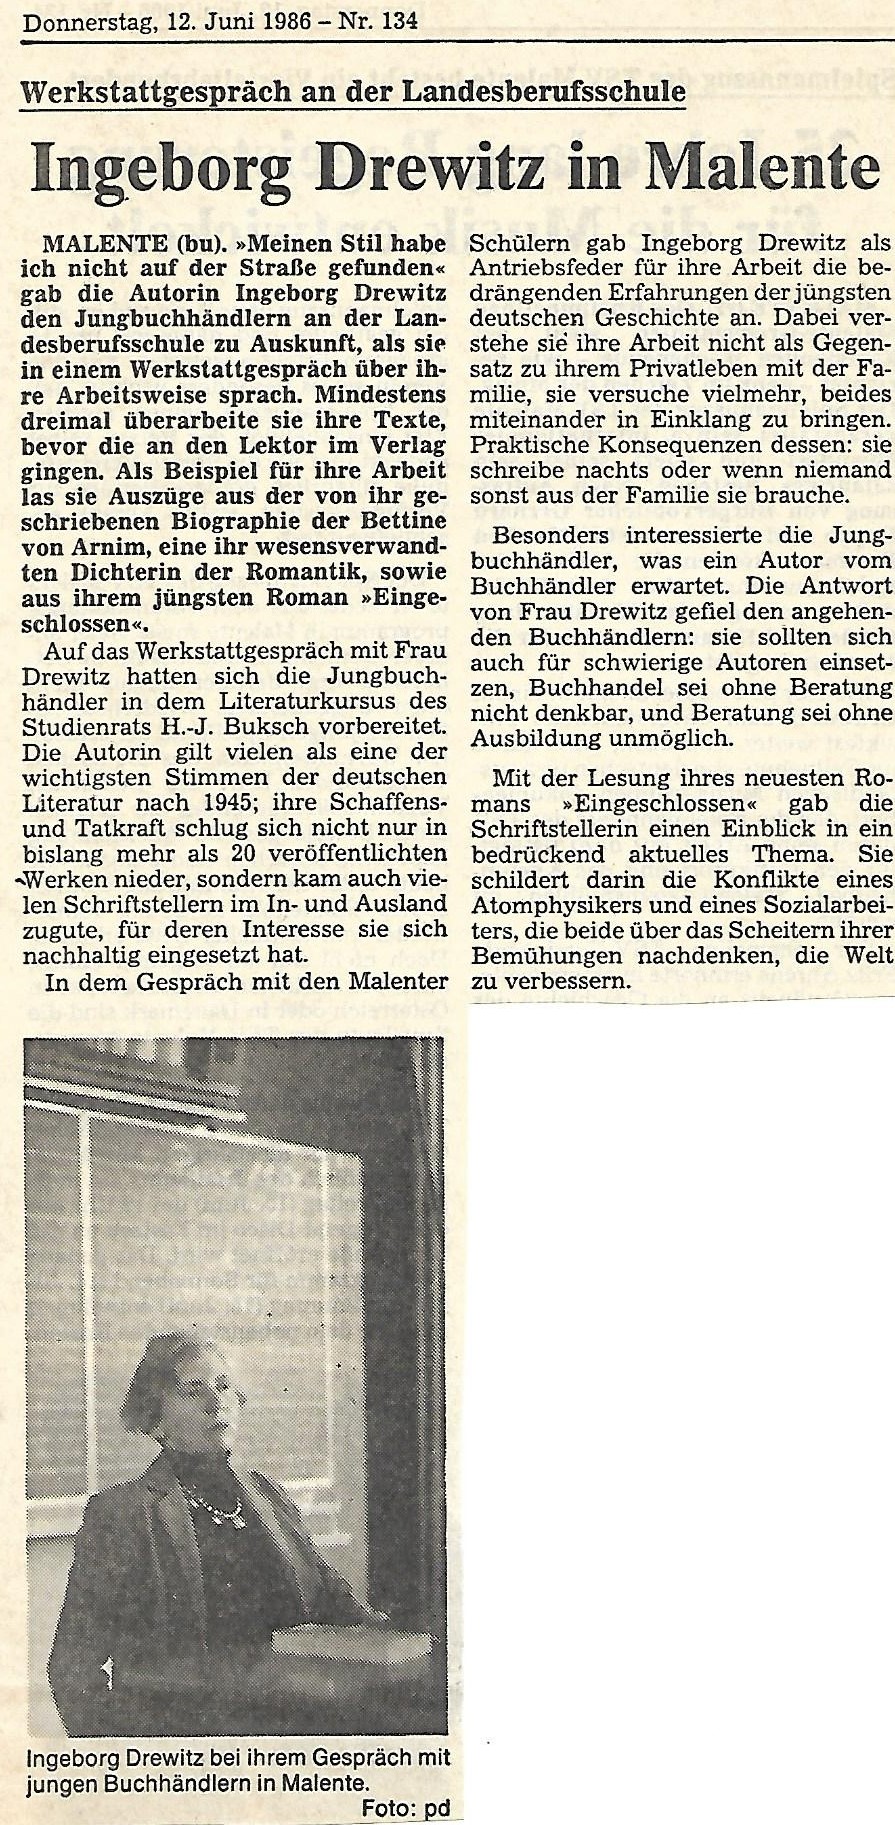 Ingeborg Drewitz (* 10. Januar 1923;  26. November 1986 ) war eine deutsche Schriftstellerin. Von ihrer Sozialkritik als Autorin leitete sie ihr gesellschaftspolitisches Engagement ab. 1966 wurde sie zur Vorsitzenden des Schutzverbandes Deutscher Schriftsteller (SDS) gewhlt.  Sie war Mitbegrnderin des Verbandes deutscher Schriftsteller (VS) und mit einer Unterbrechung von 1969 bis 1980 dessen stellvertretende Vorsitzende.